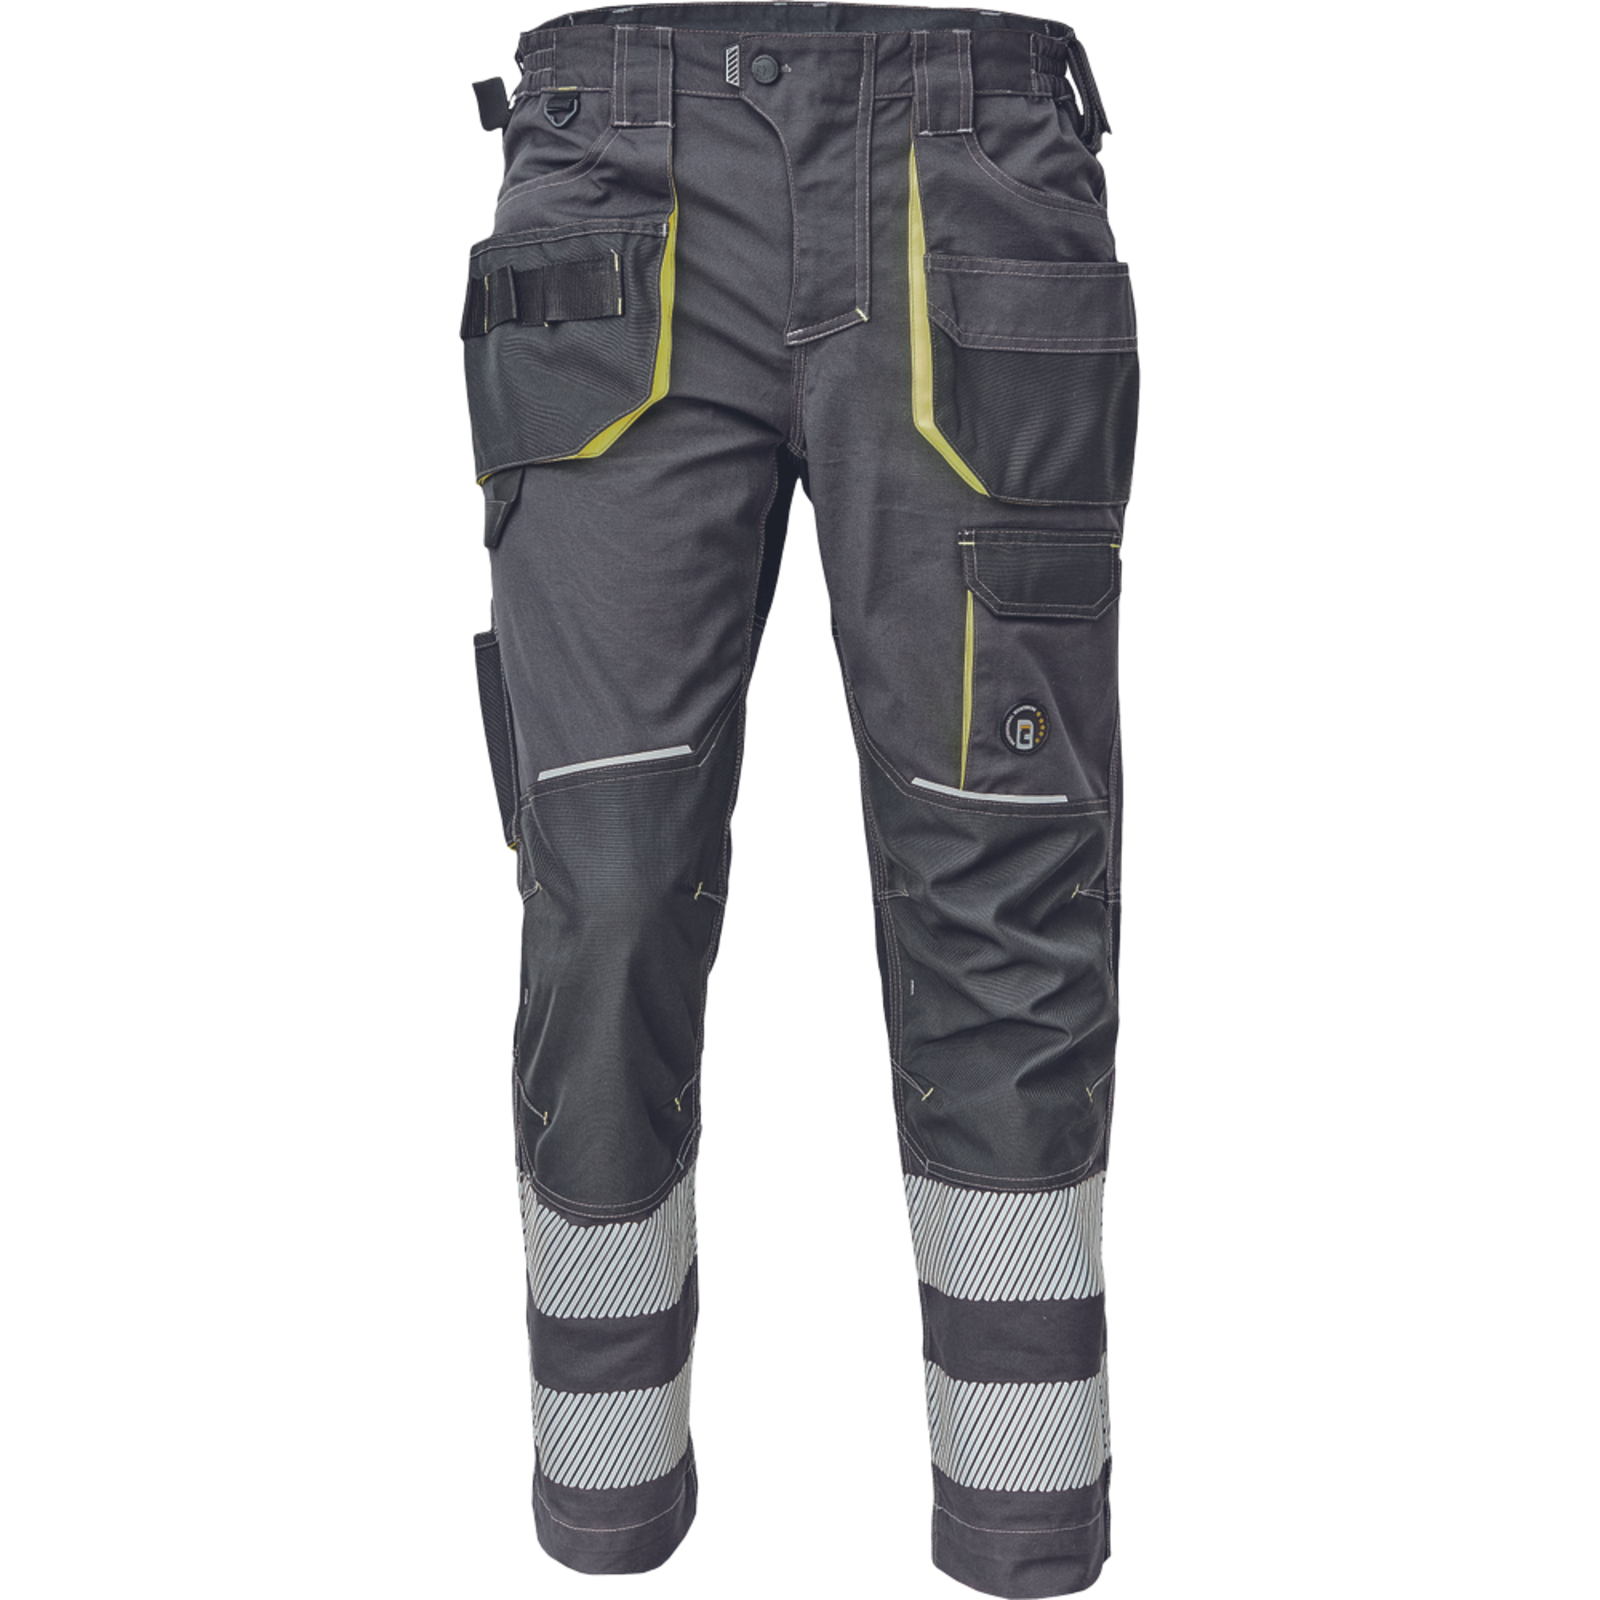 Pracovné nohavice s reflexnými pruhmi Cerva Sheldon RFLX pánske - veľkosť: 46, farba: antracit/žltá